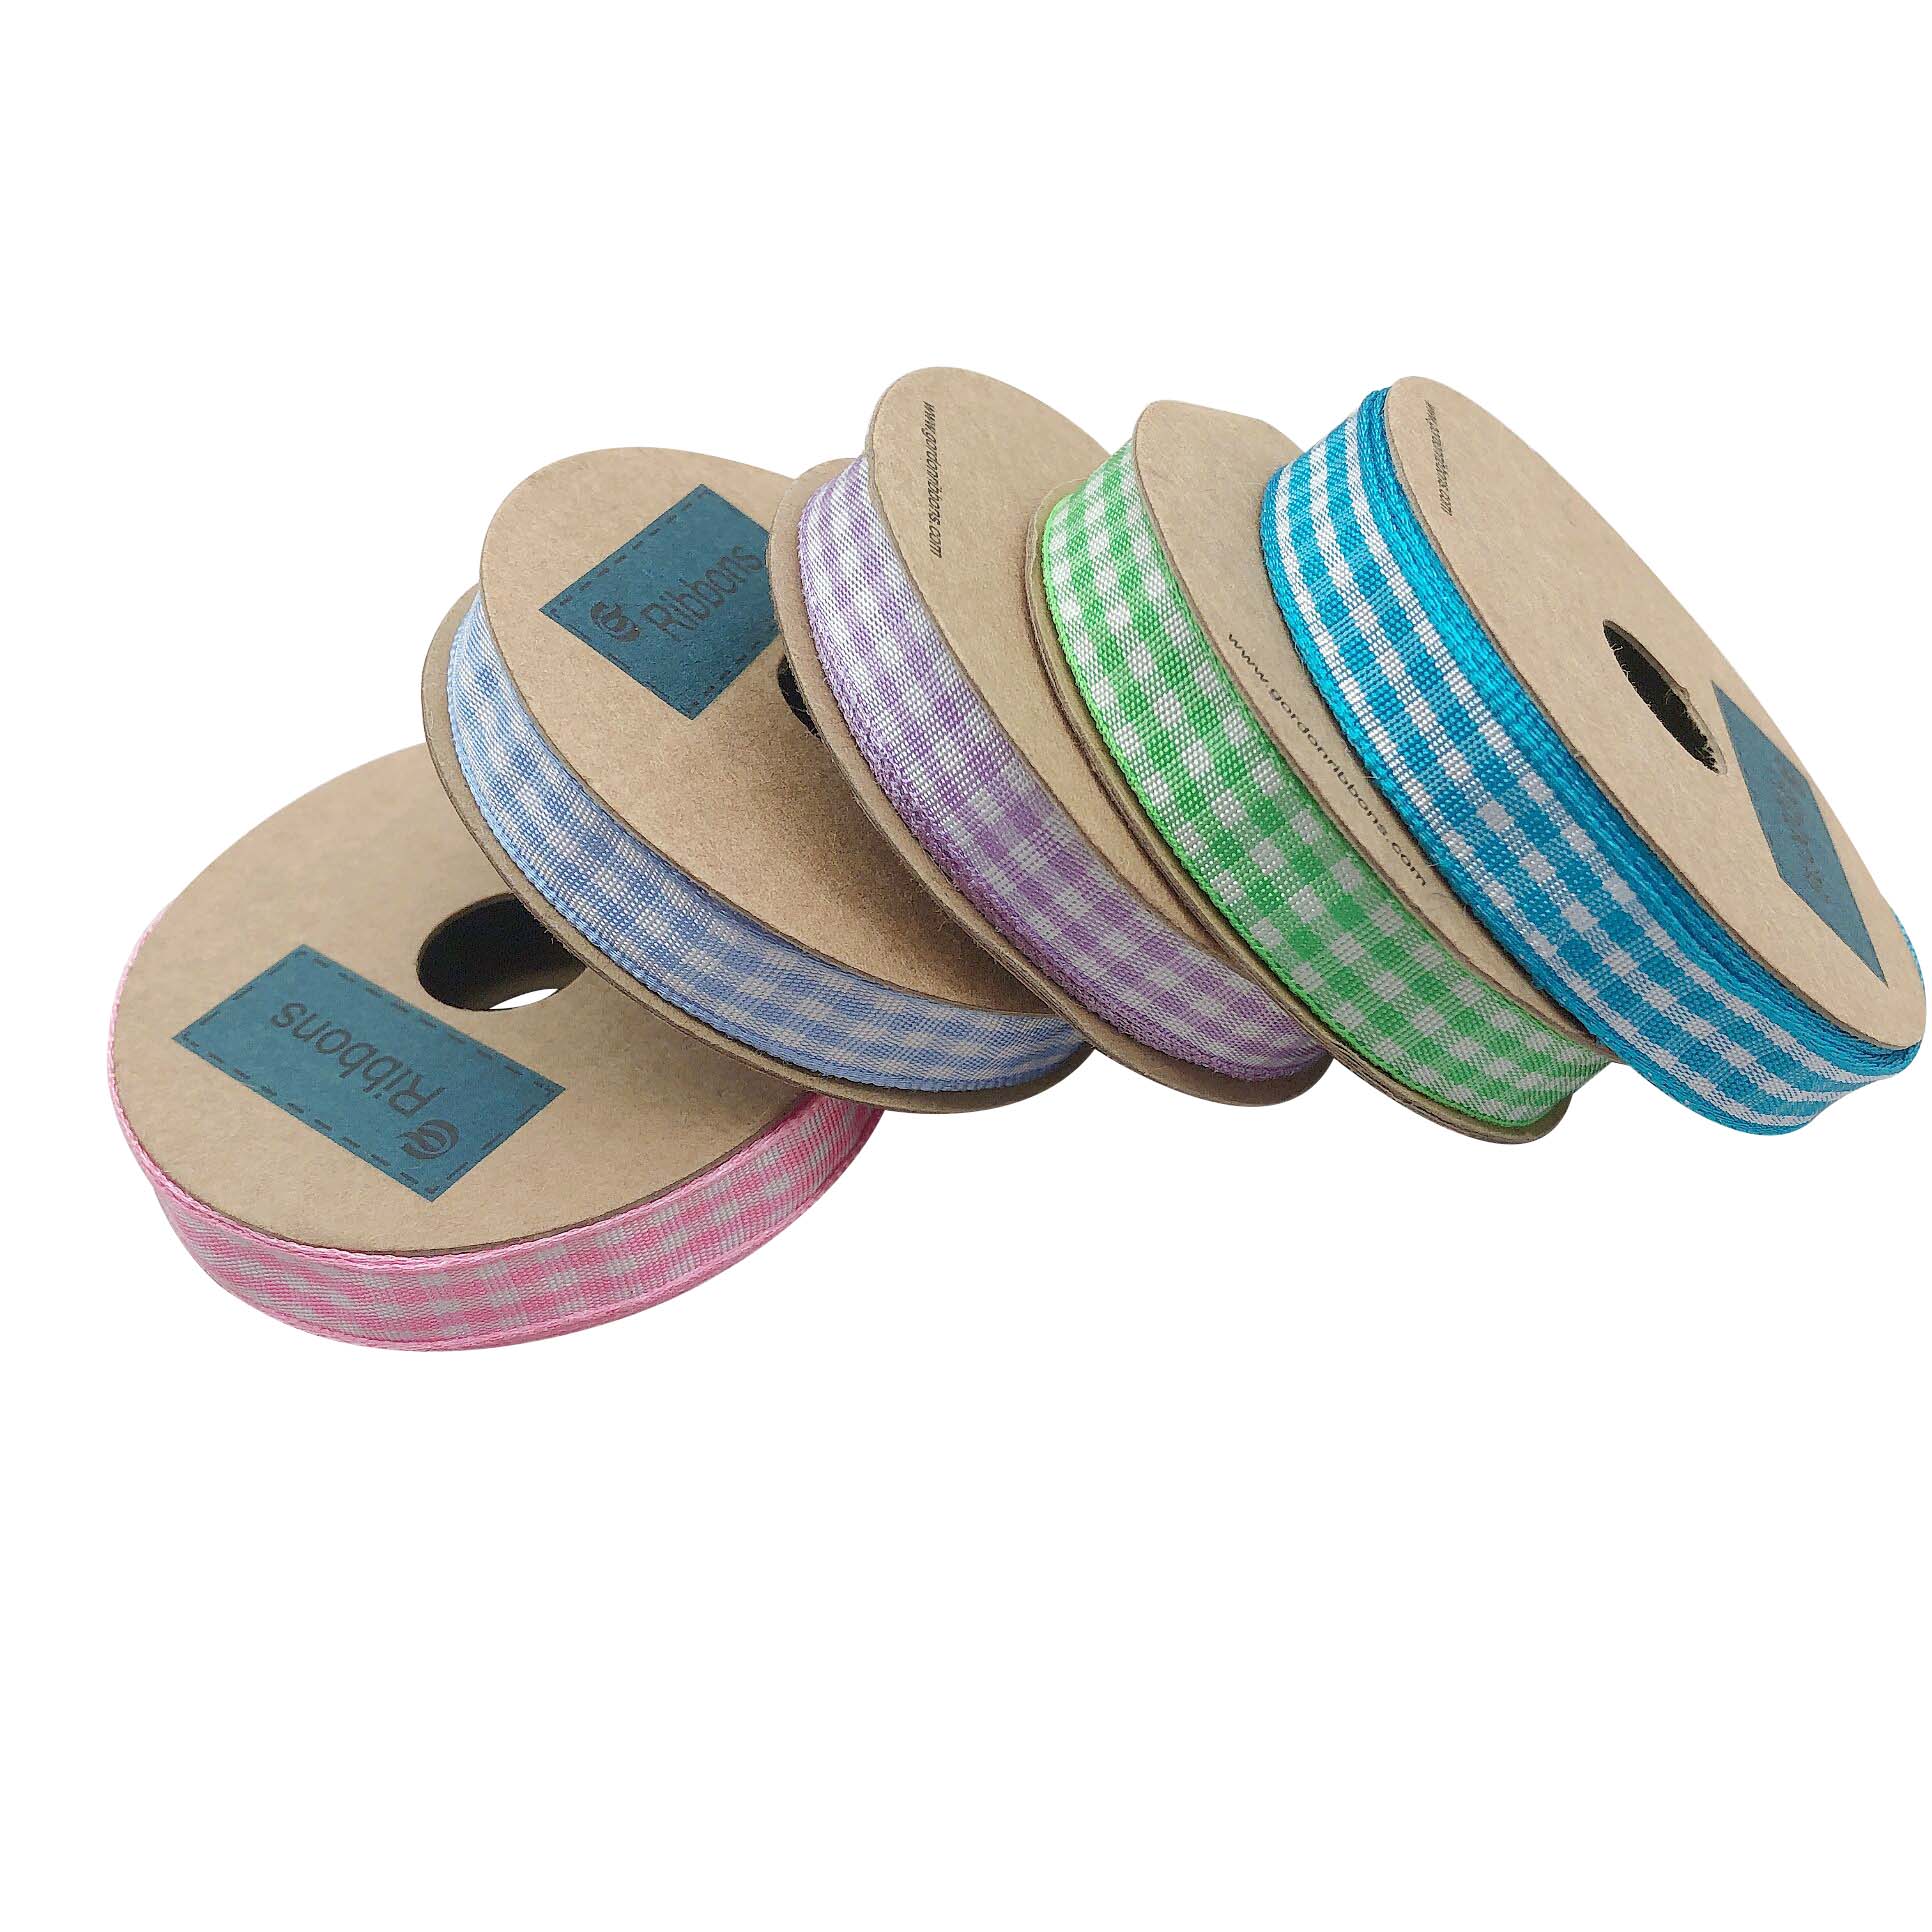 5/8”16mm fashion colorful tartan plaid gingham ribbon